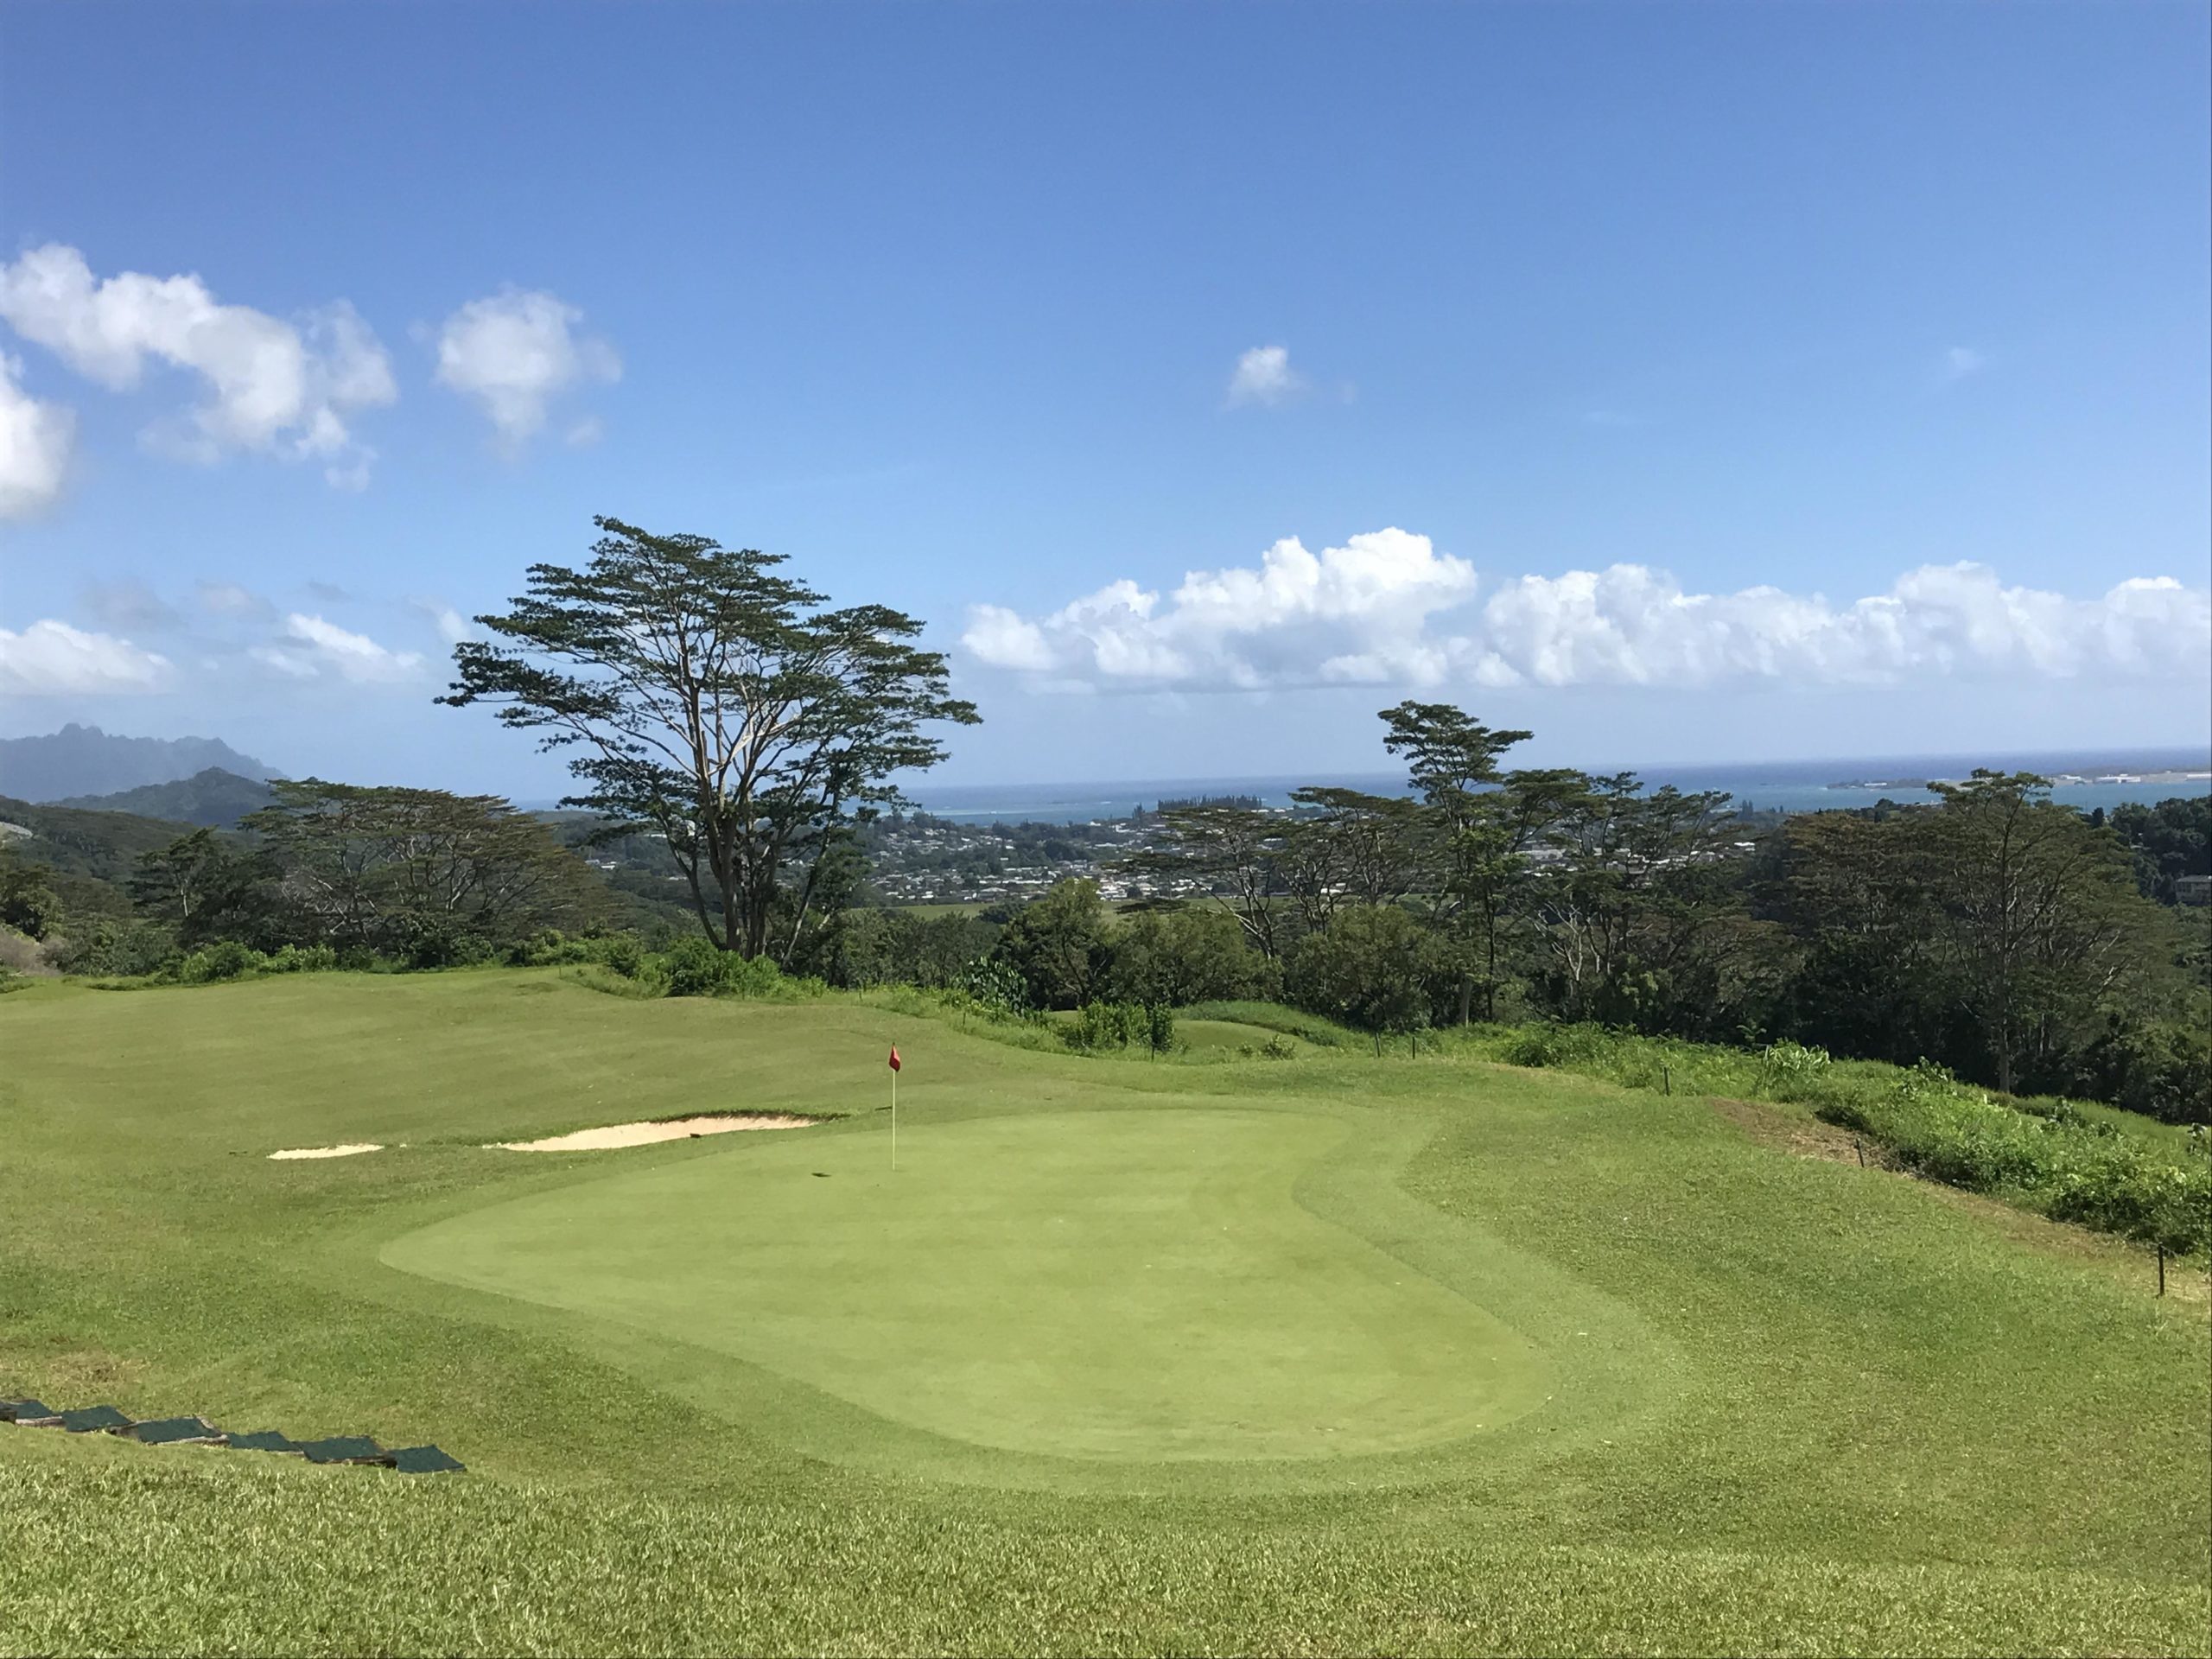 ハワイアンツアーズで予約できる人気のゴルフ場が増えましたーヽ O 丿 ハワイ州公認の旅行会社ハワイアンツアーズ